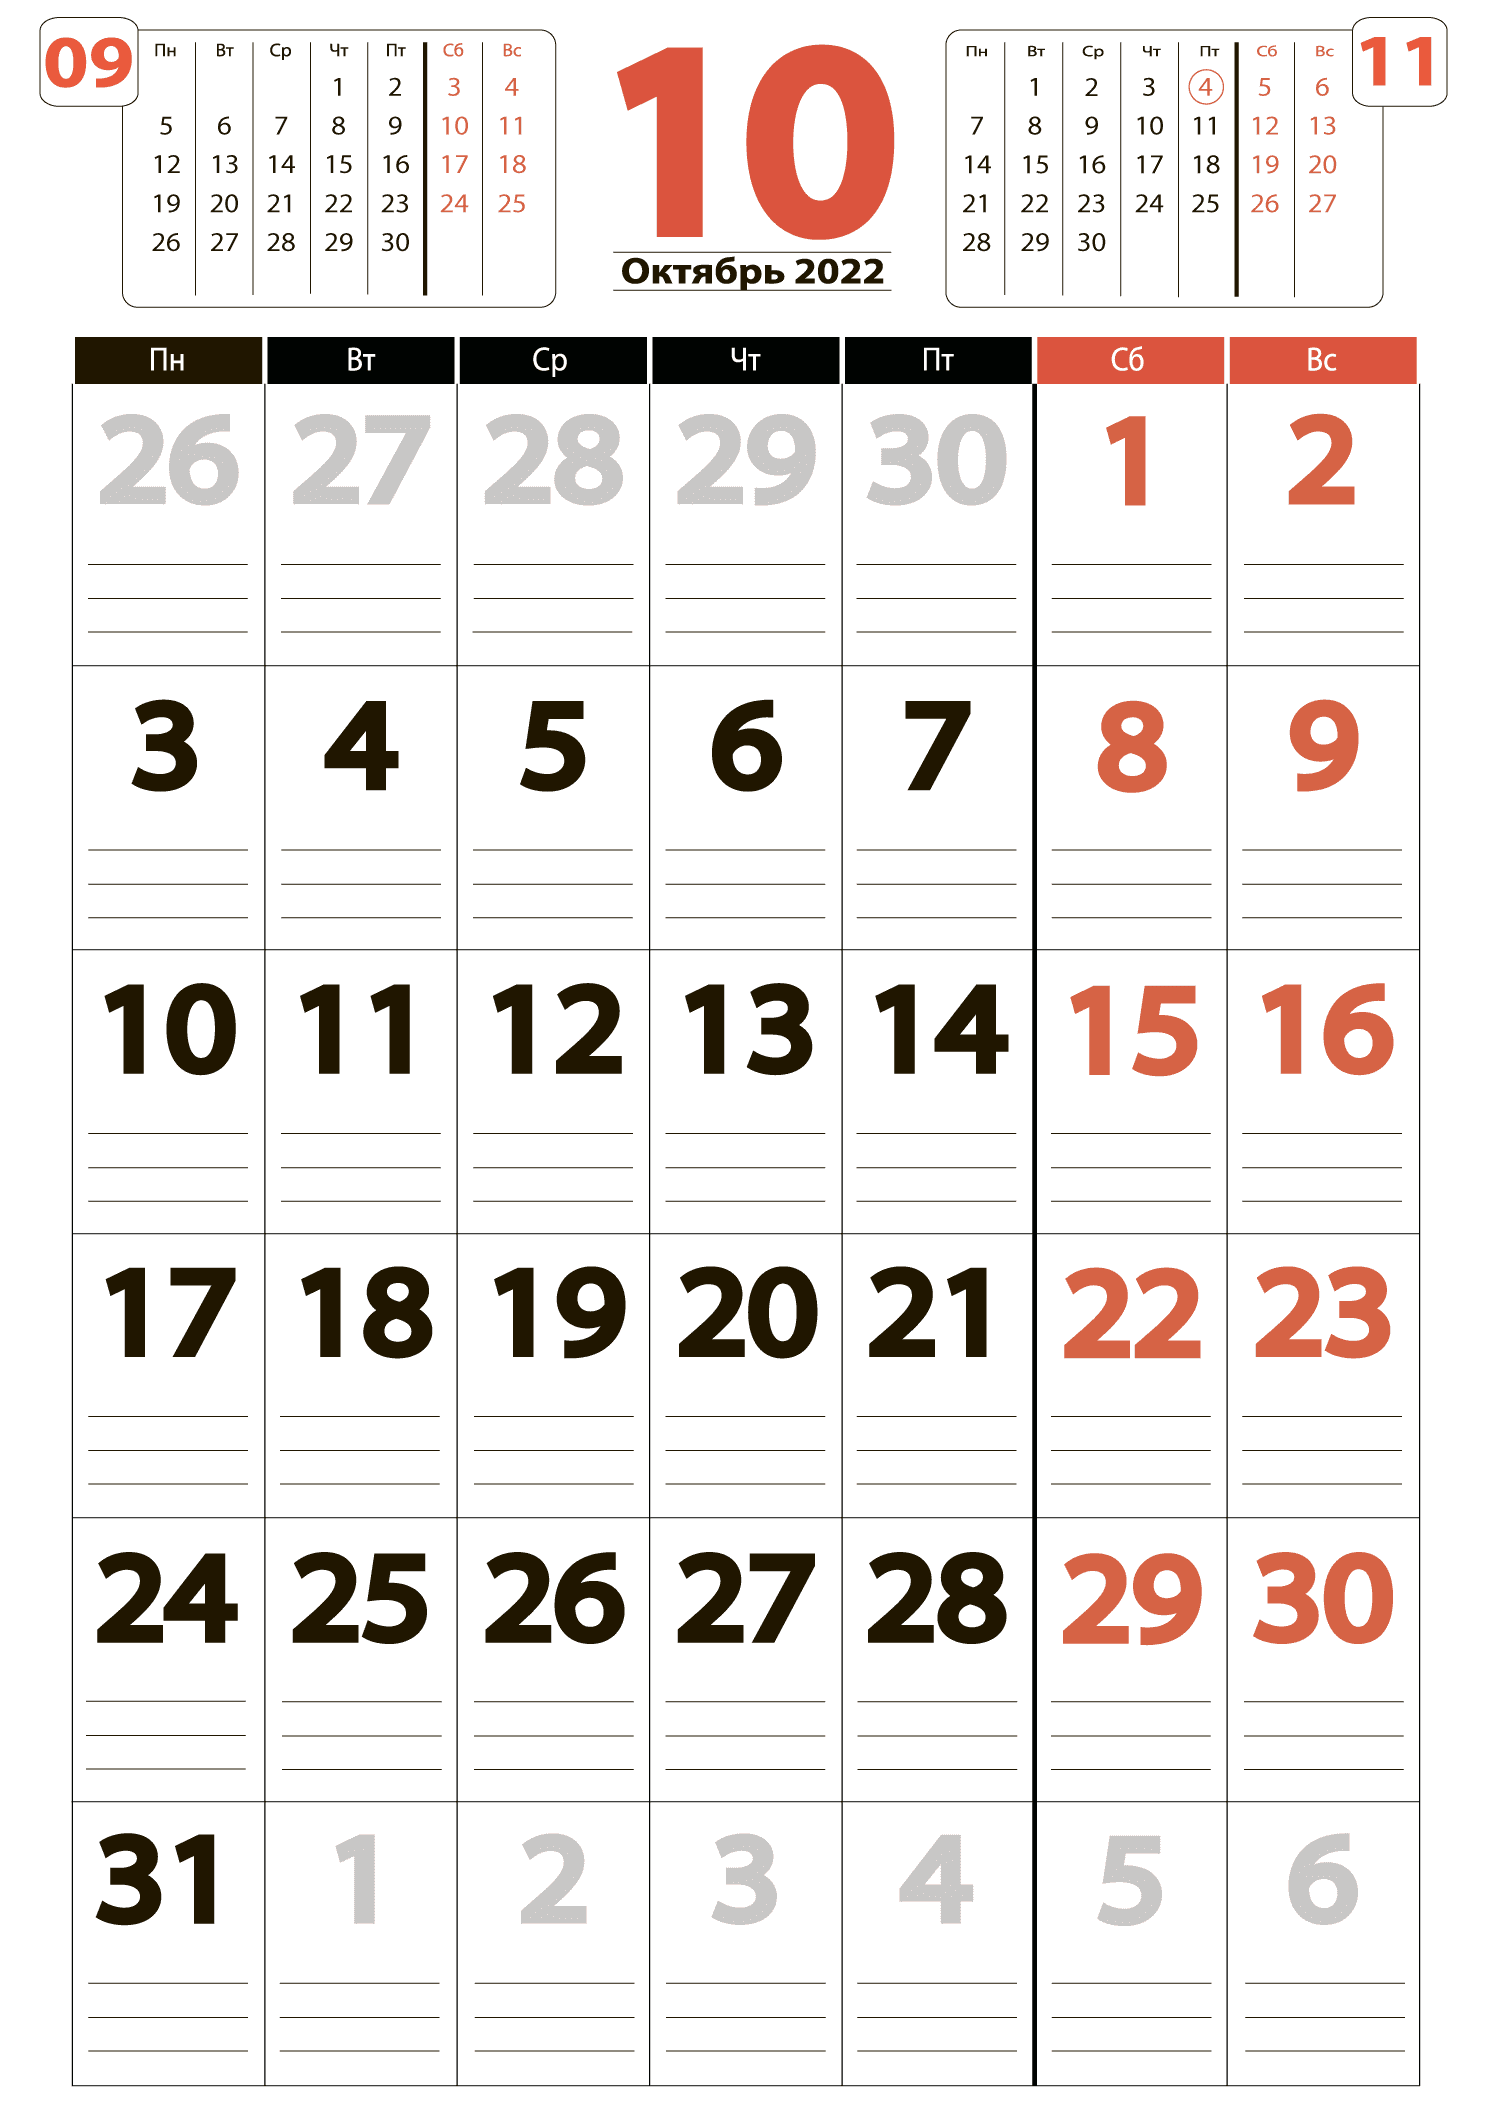 Календарь на октябрь 2022 - скачать